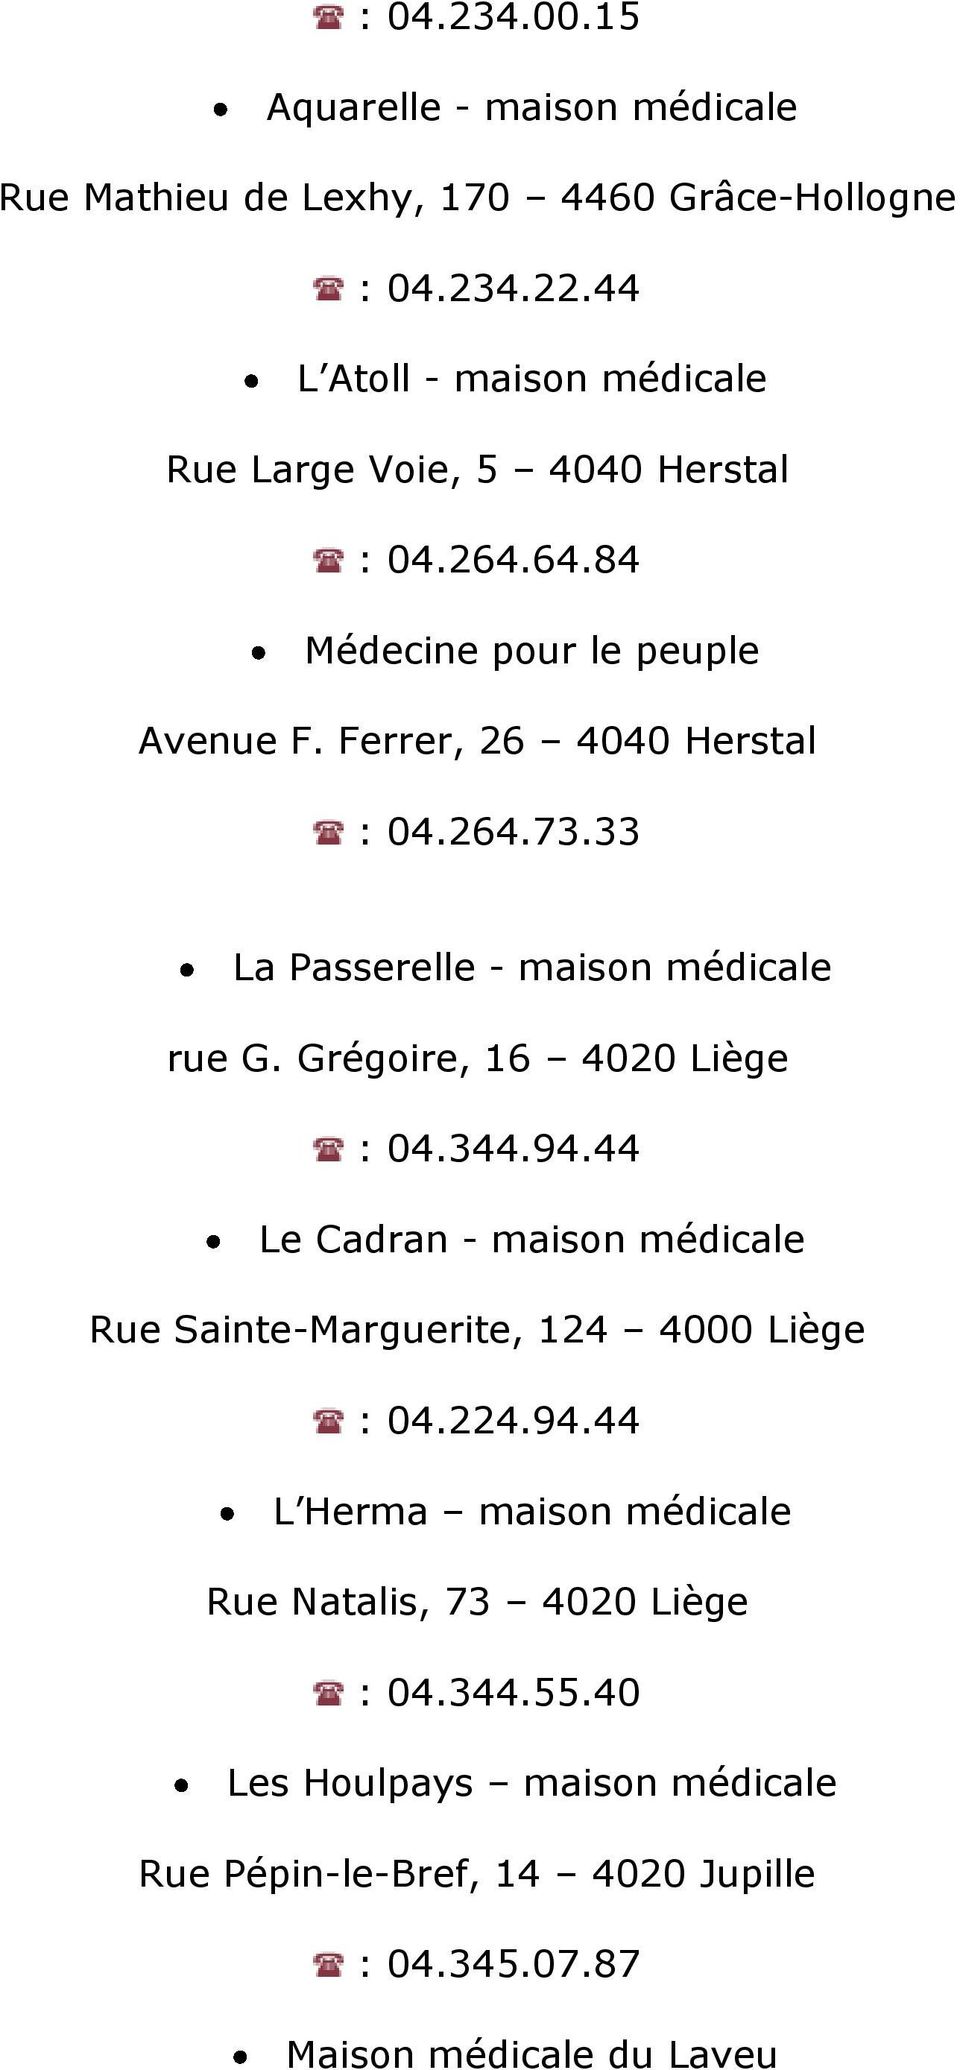 33 La Passerelle - maison médicale rue G. Grégoire, 16 4020 Liège : 04.344.94.